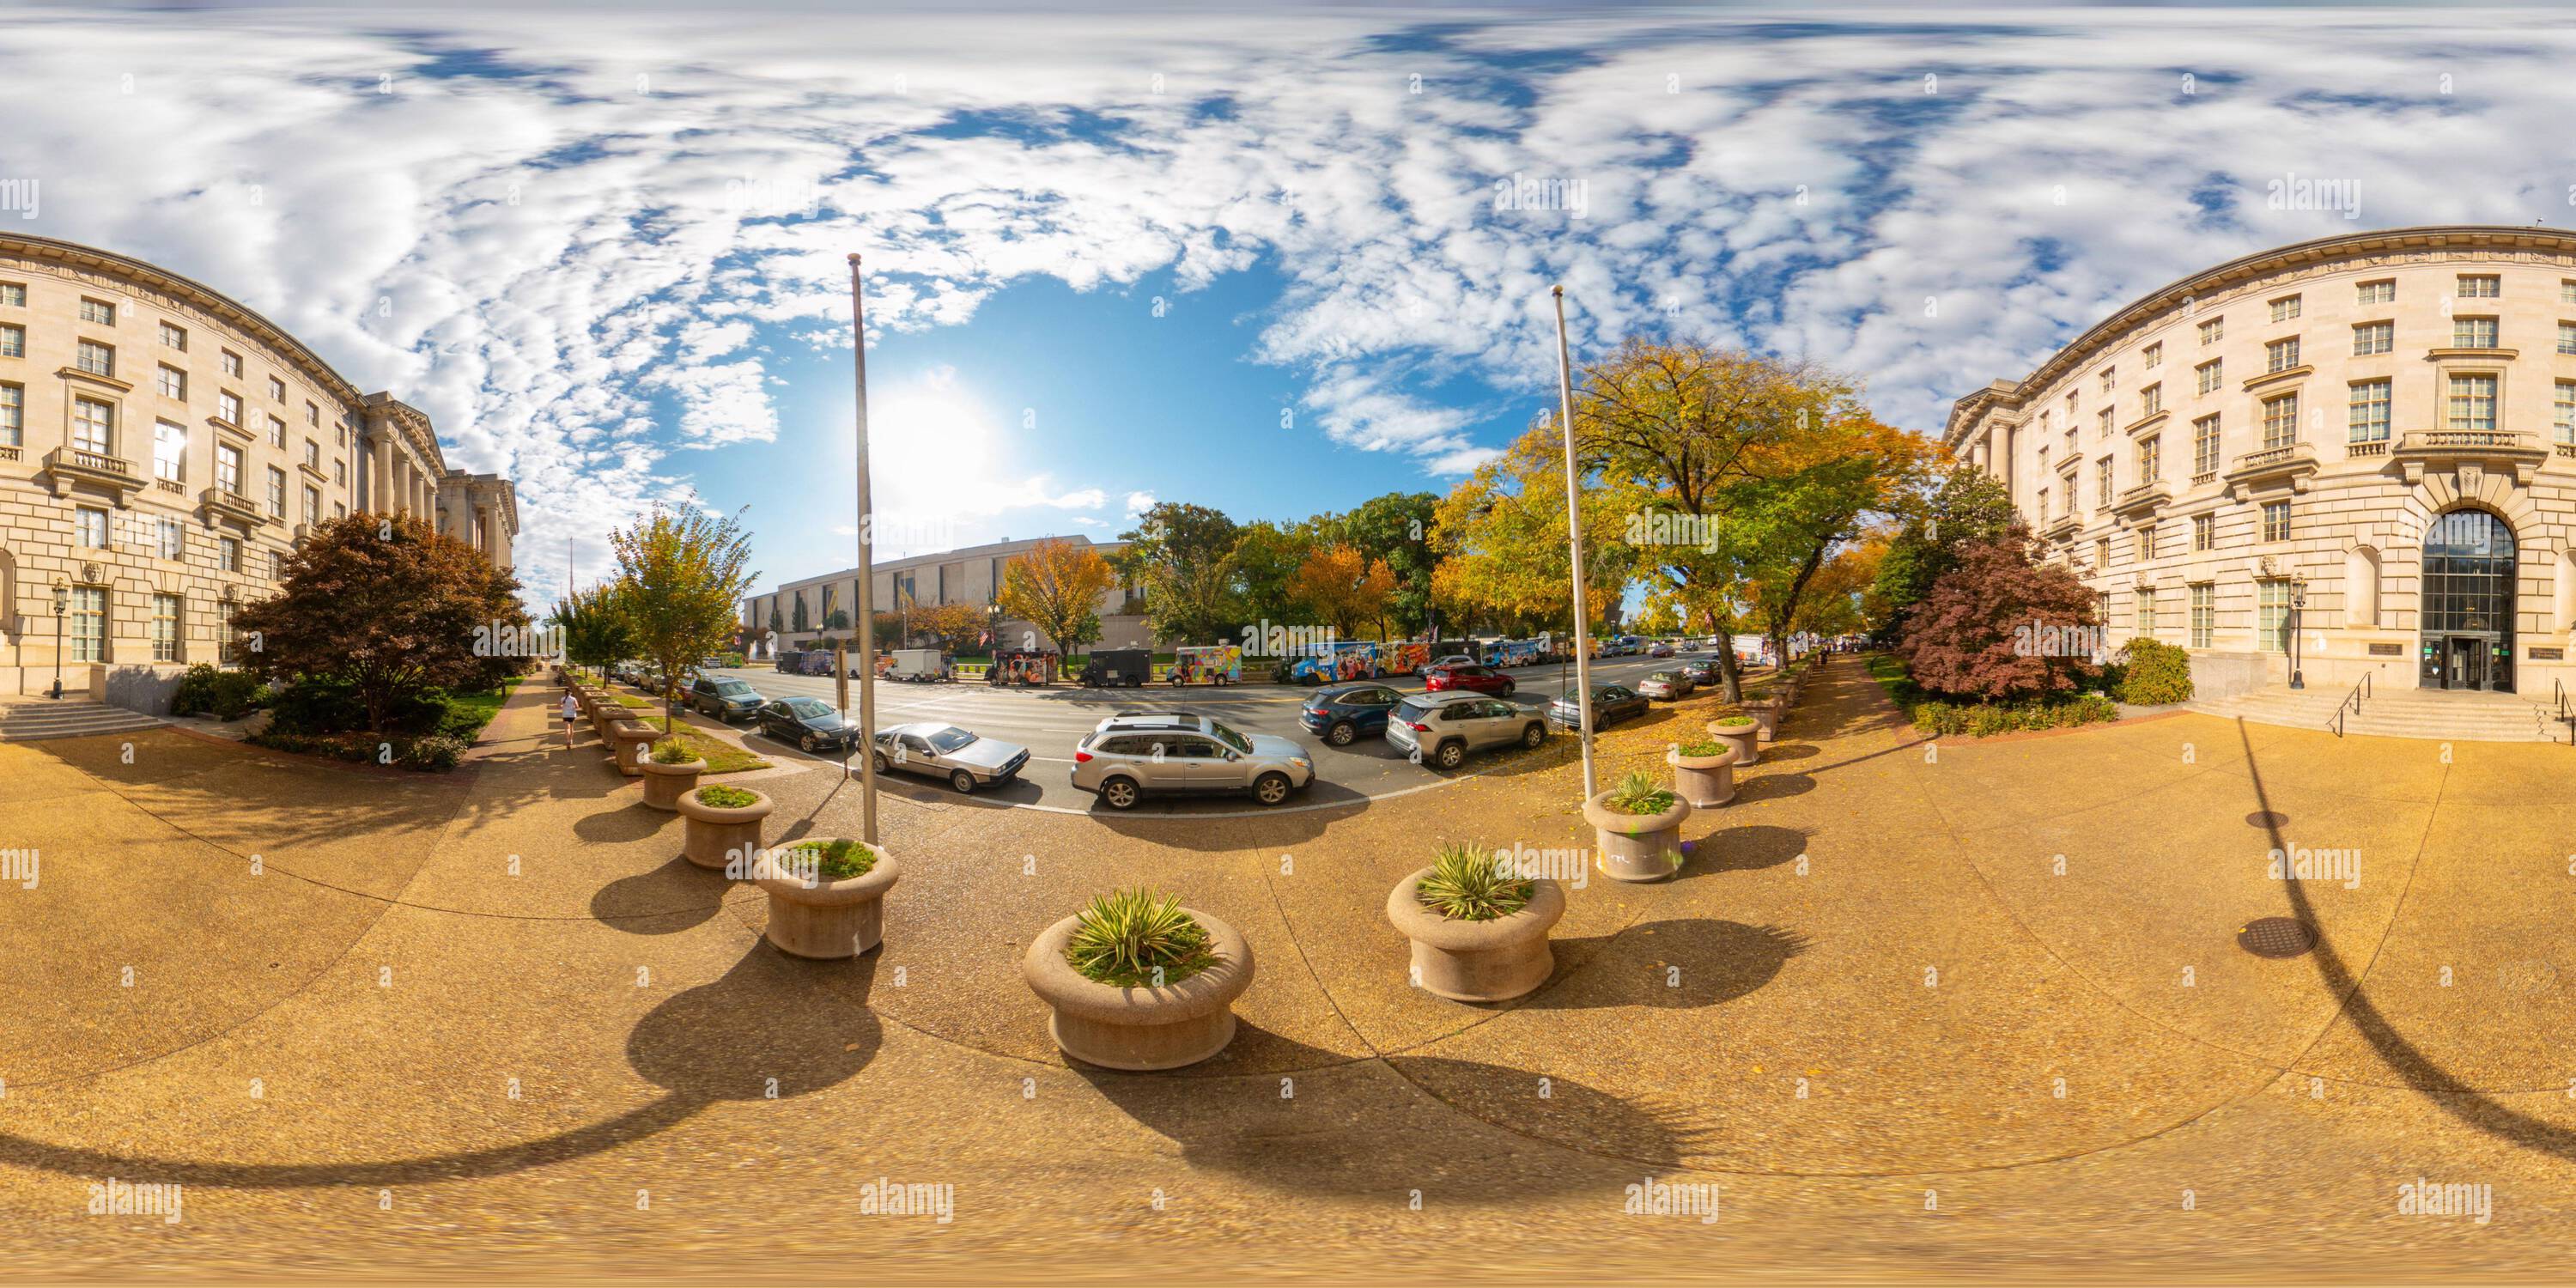 Visualizzazione panoramica a 360 gradi di Washington DC, Stati Uniti d'America - 28 ottobre 2023: Immagine ufficiale William Jefferson Clinton West Building DC. Foto equirettangolare Panoramic VR a 360 gradi